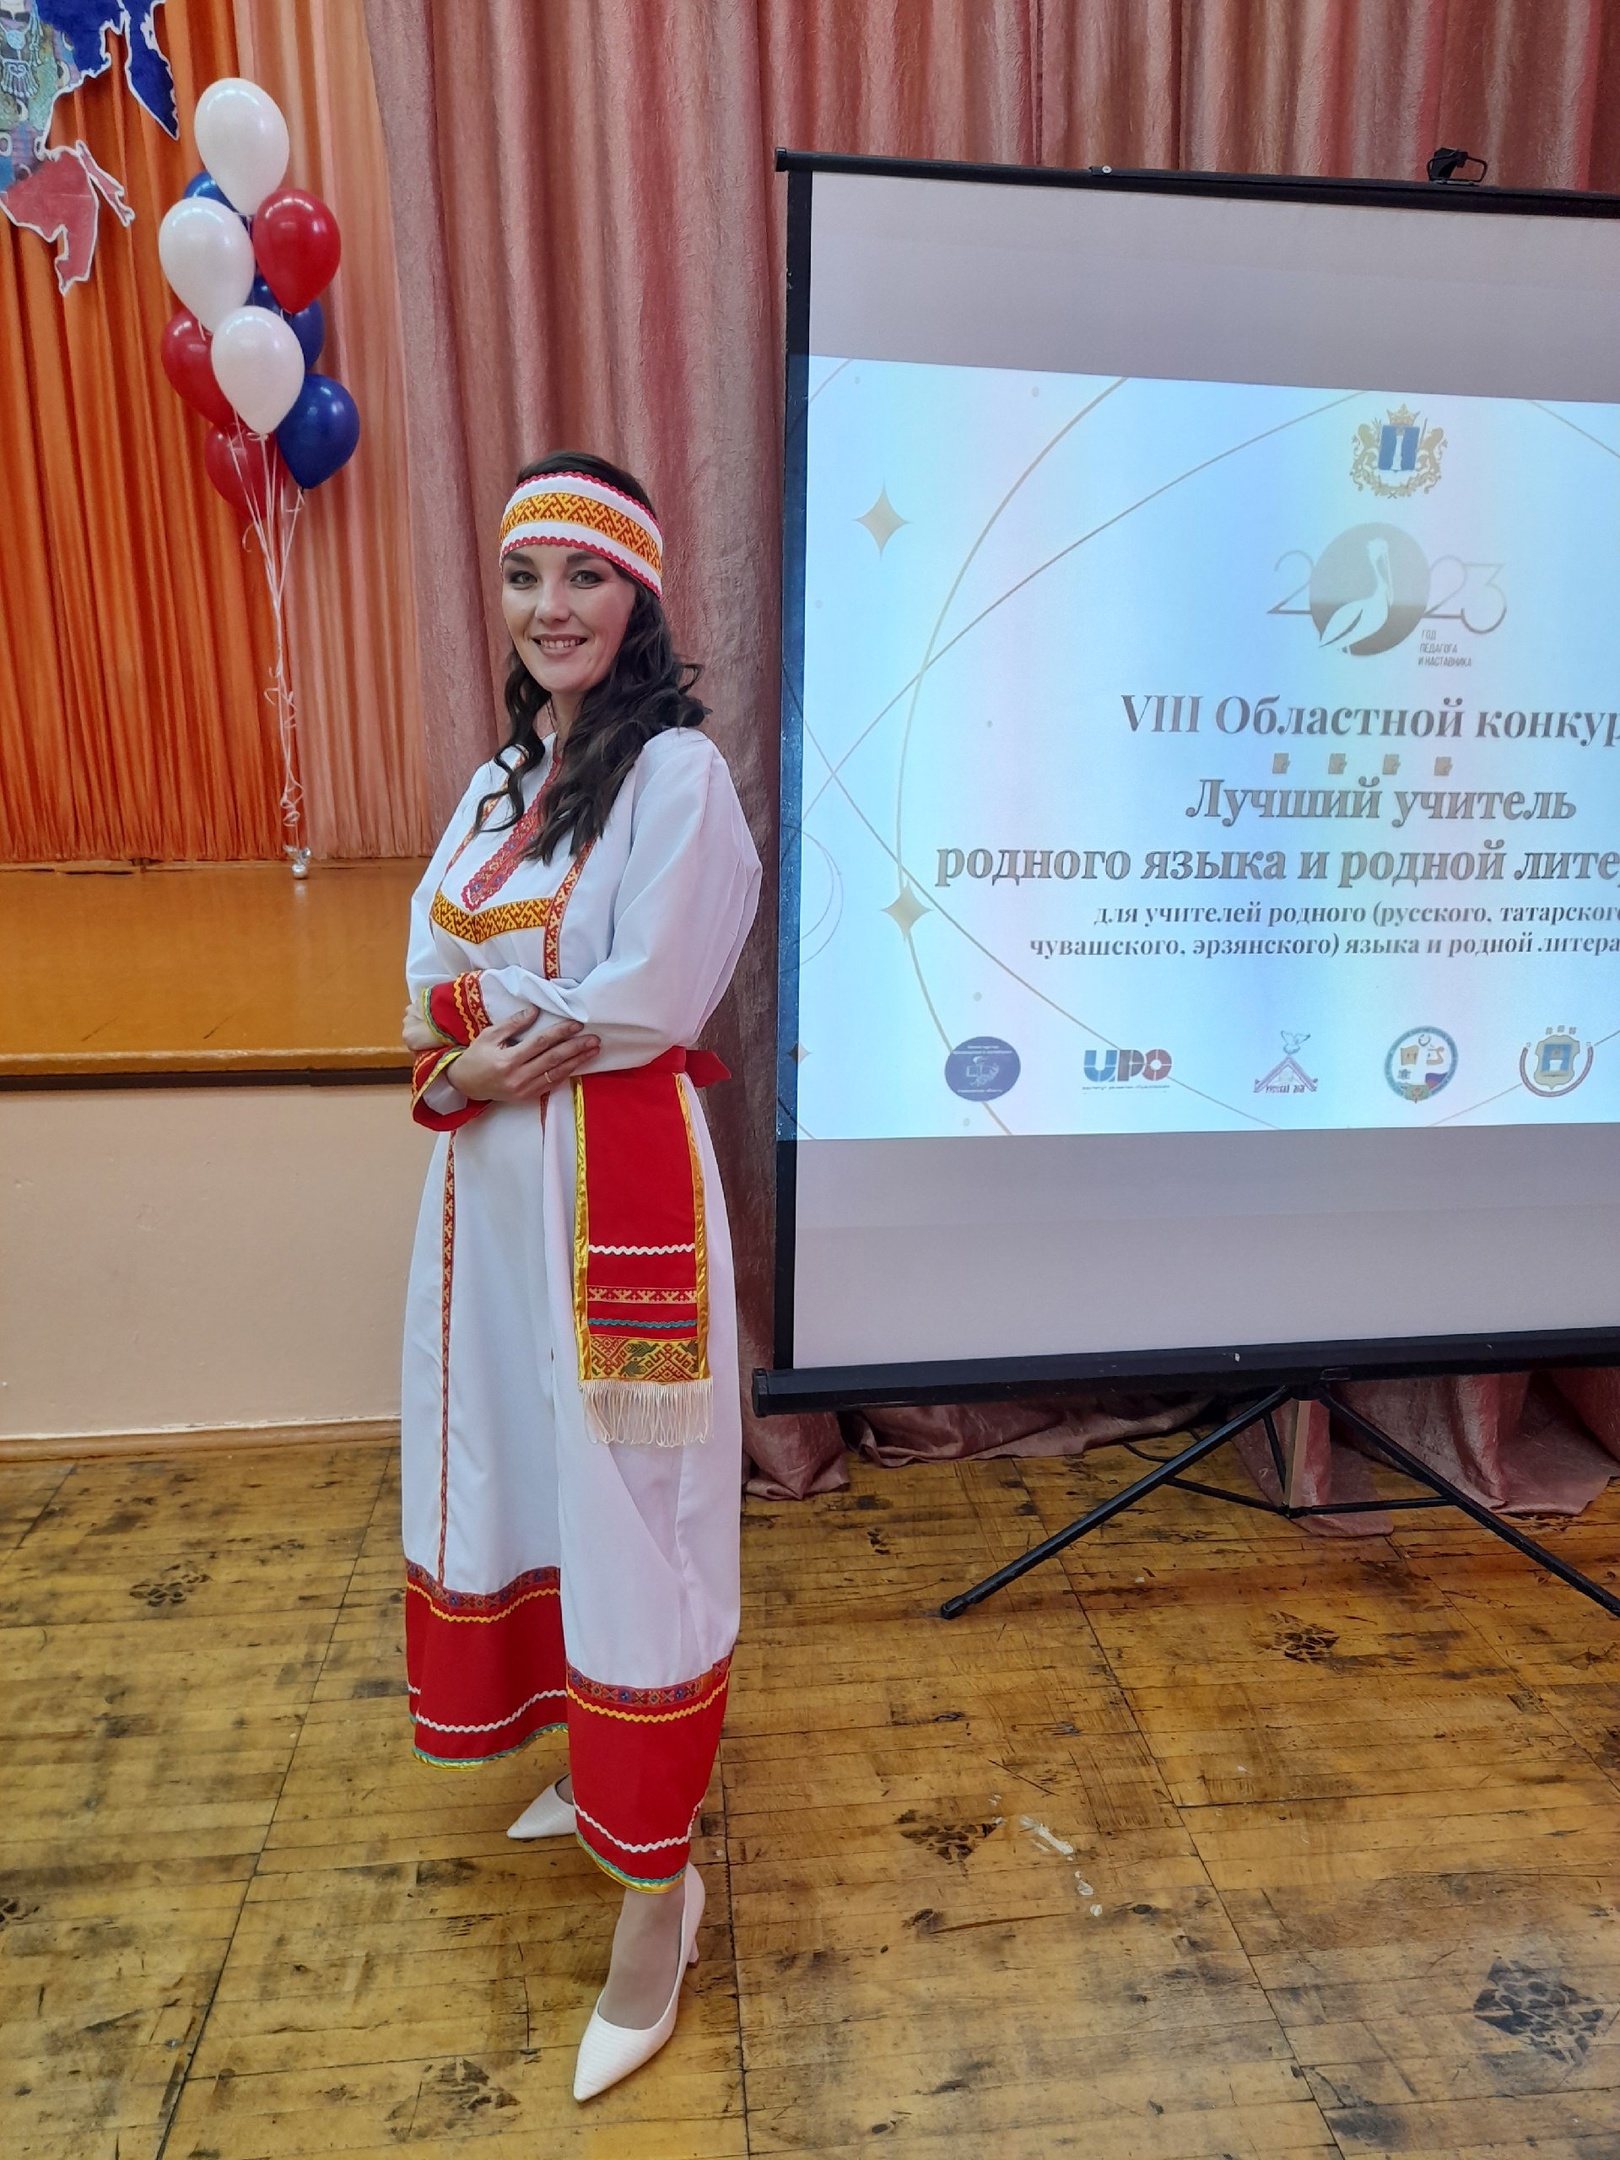 Педагог ульяновской гимназии №13 вошла в число победителей конкурса «Лучший учитель родного языка и литературы».